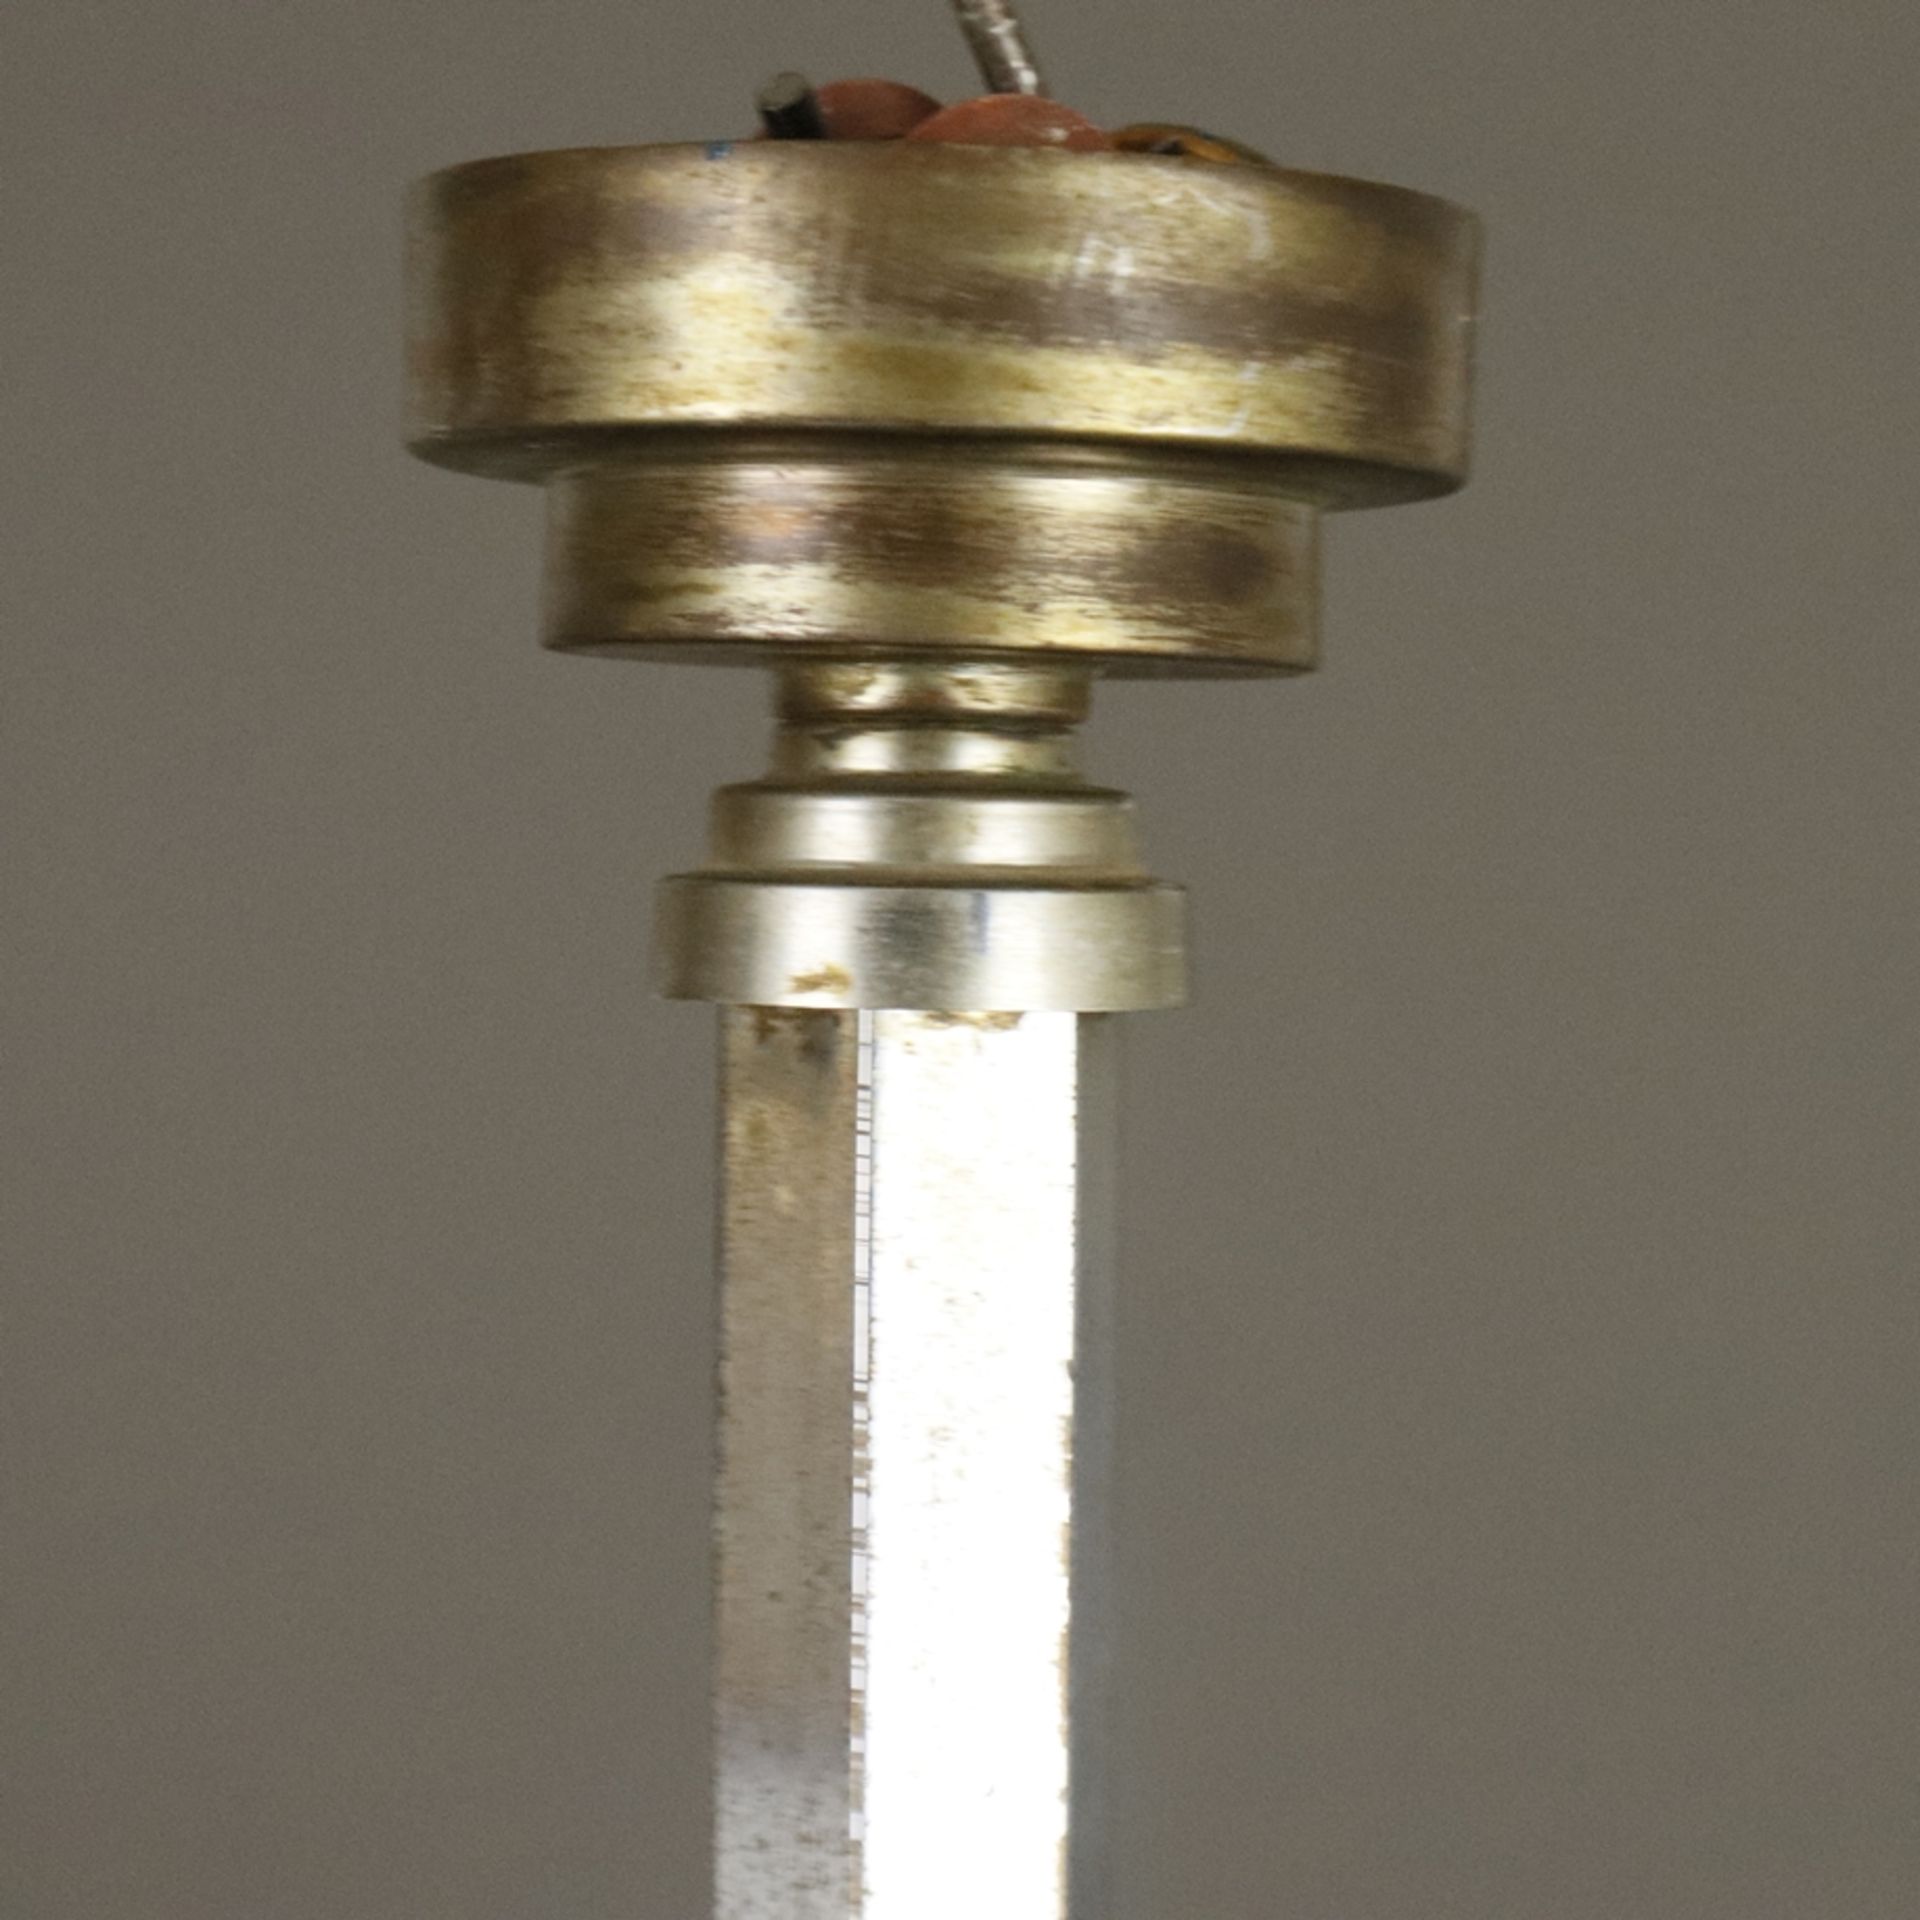 Art Déco-Deckenlampe - Frankreich um 1920/30, dreiarmiges Metallgestell mit drei Opalglas-Kugelschi - Bild 7 aus 11